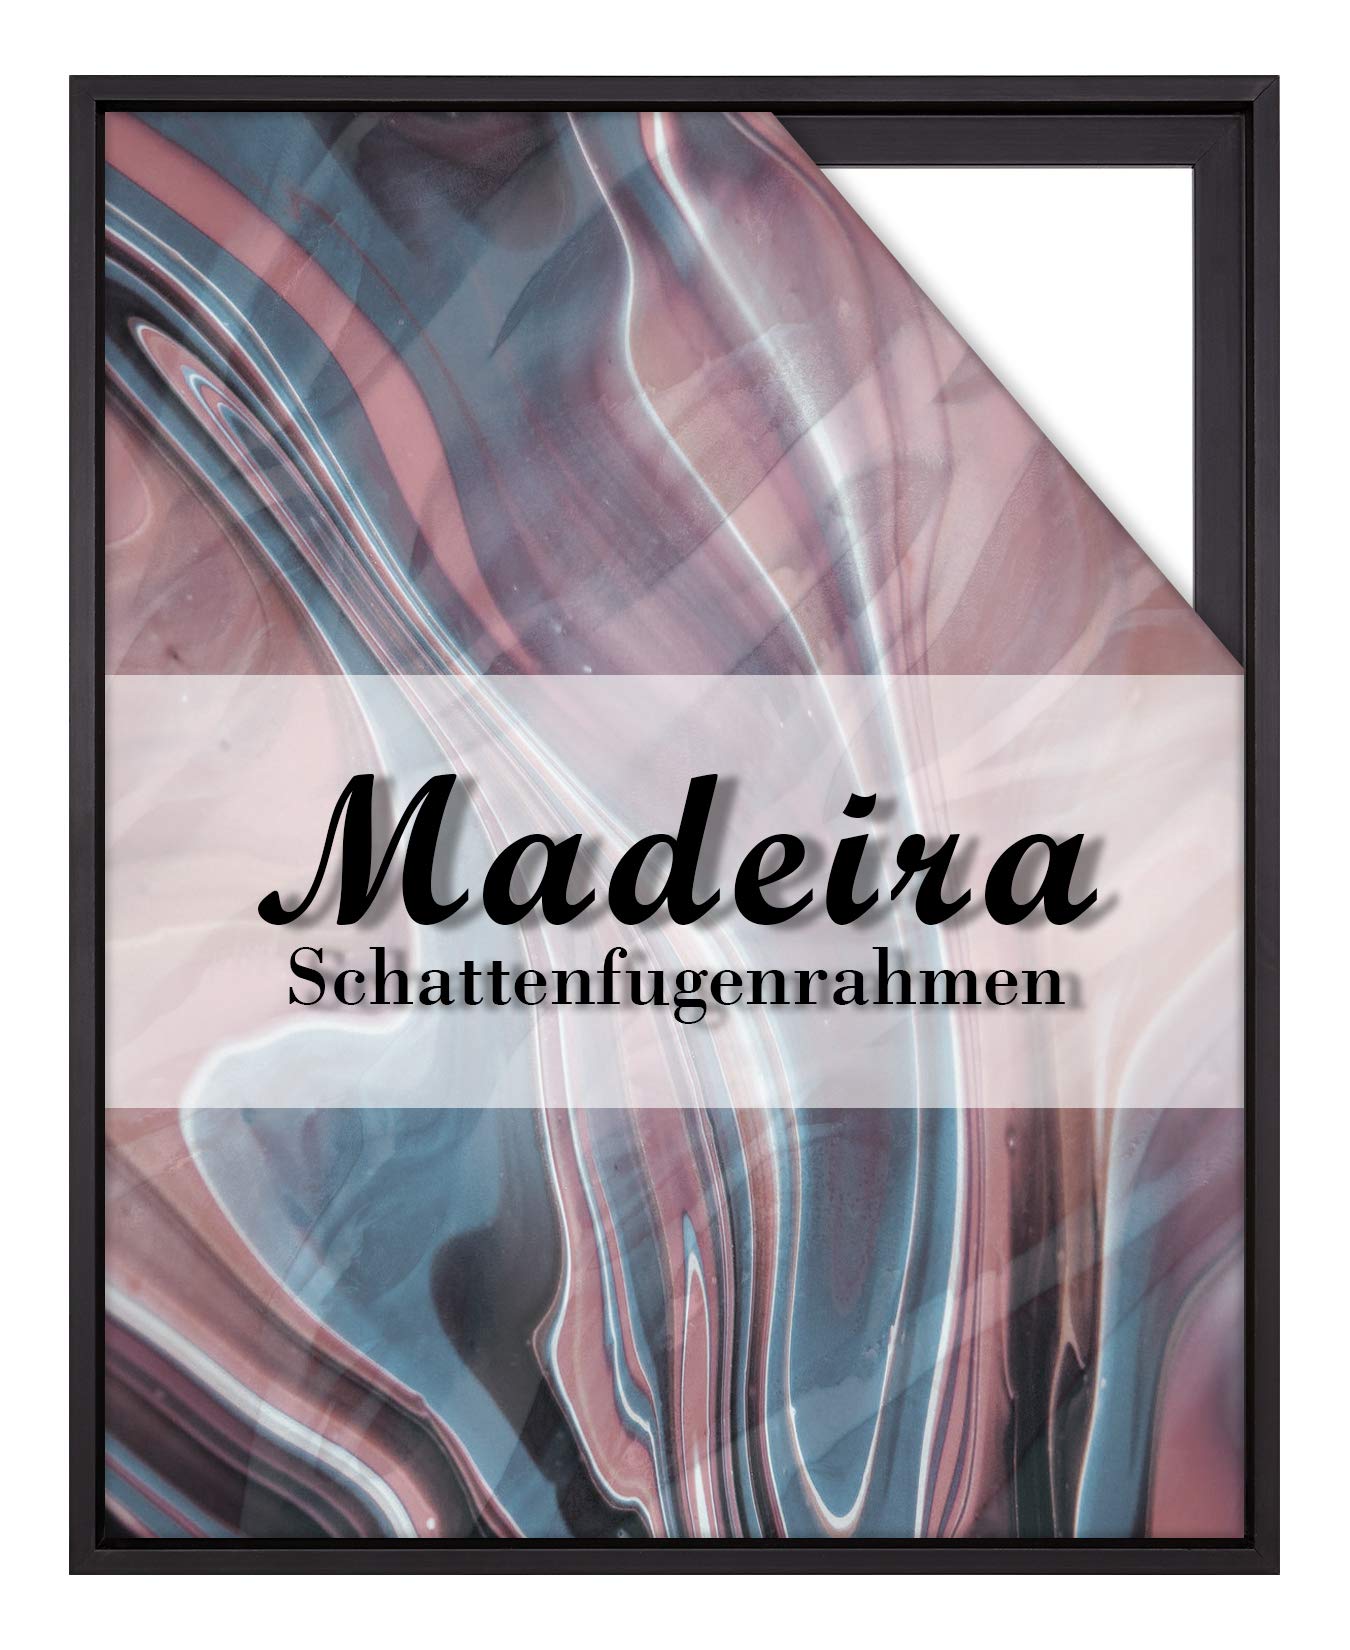 BIRAPA Madeira Schattenfugenrahmen für Leinwand 80x160 cm in Schwarz, Holzrahmen, Rahmen für Leinwände, Leerrahmen für Leinwand, Schattenfugenrahmen für Keilrahmen